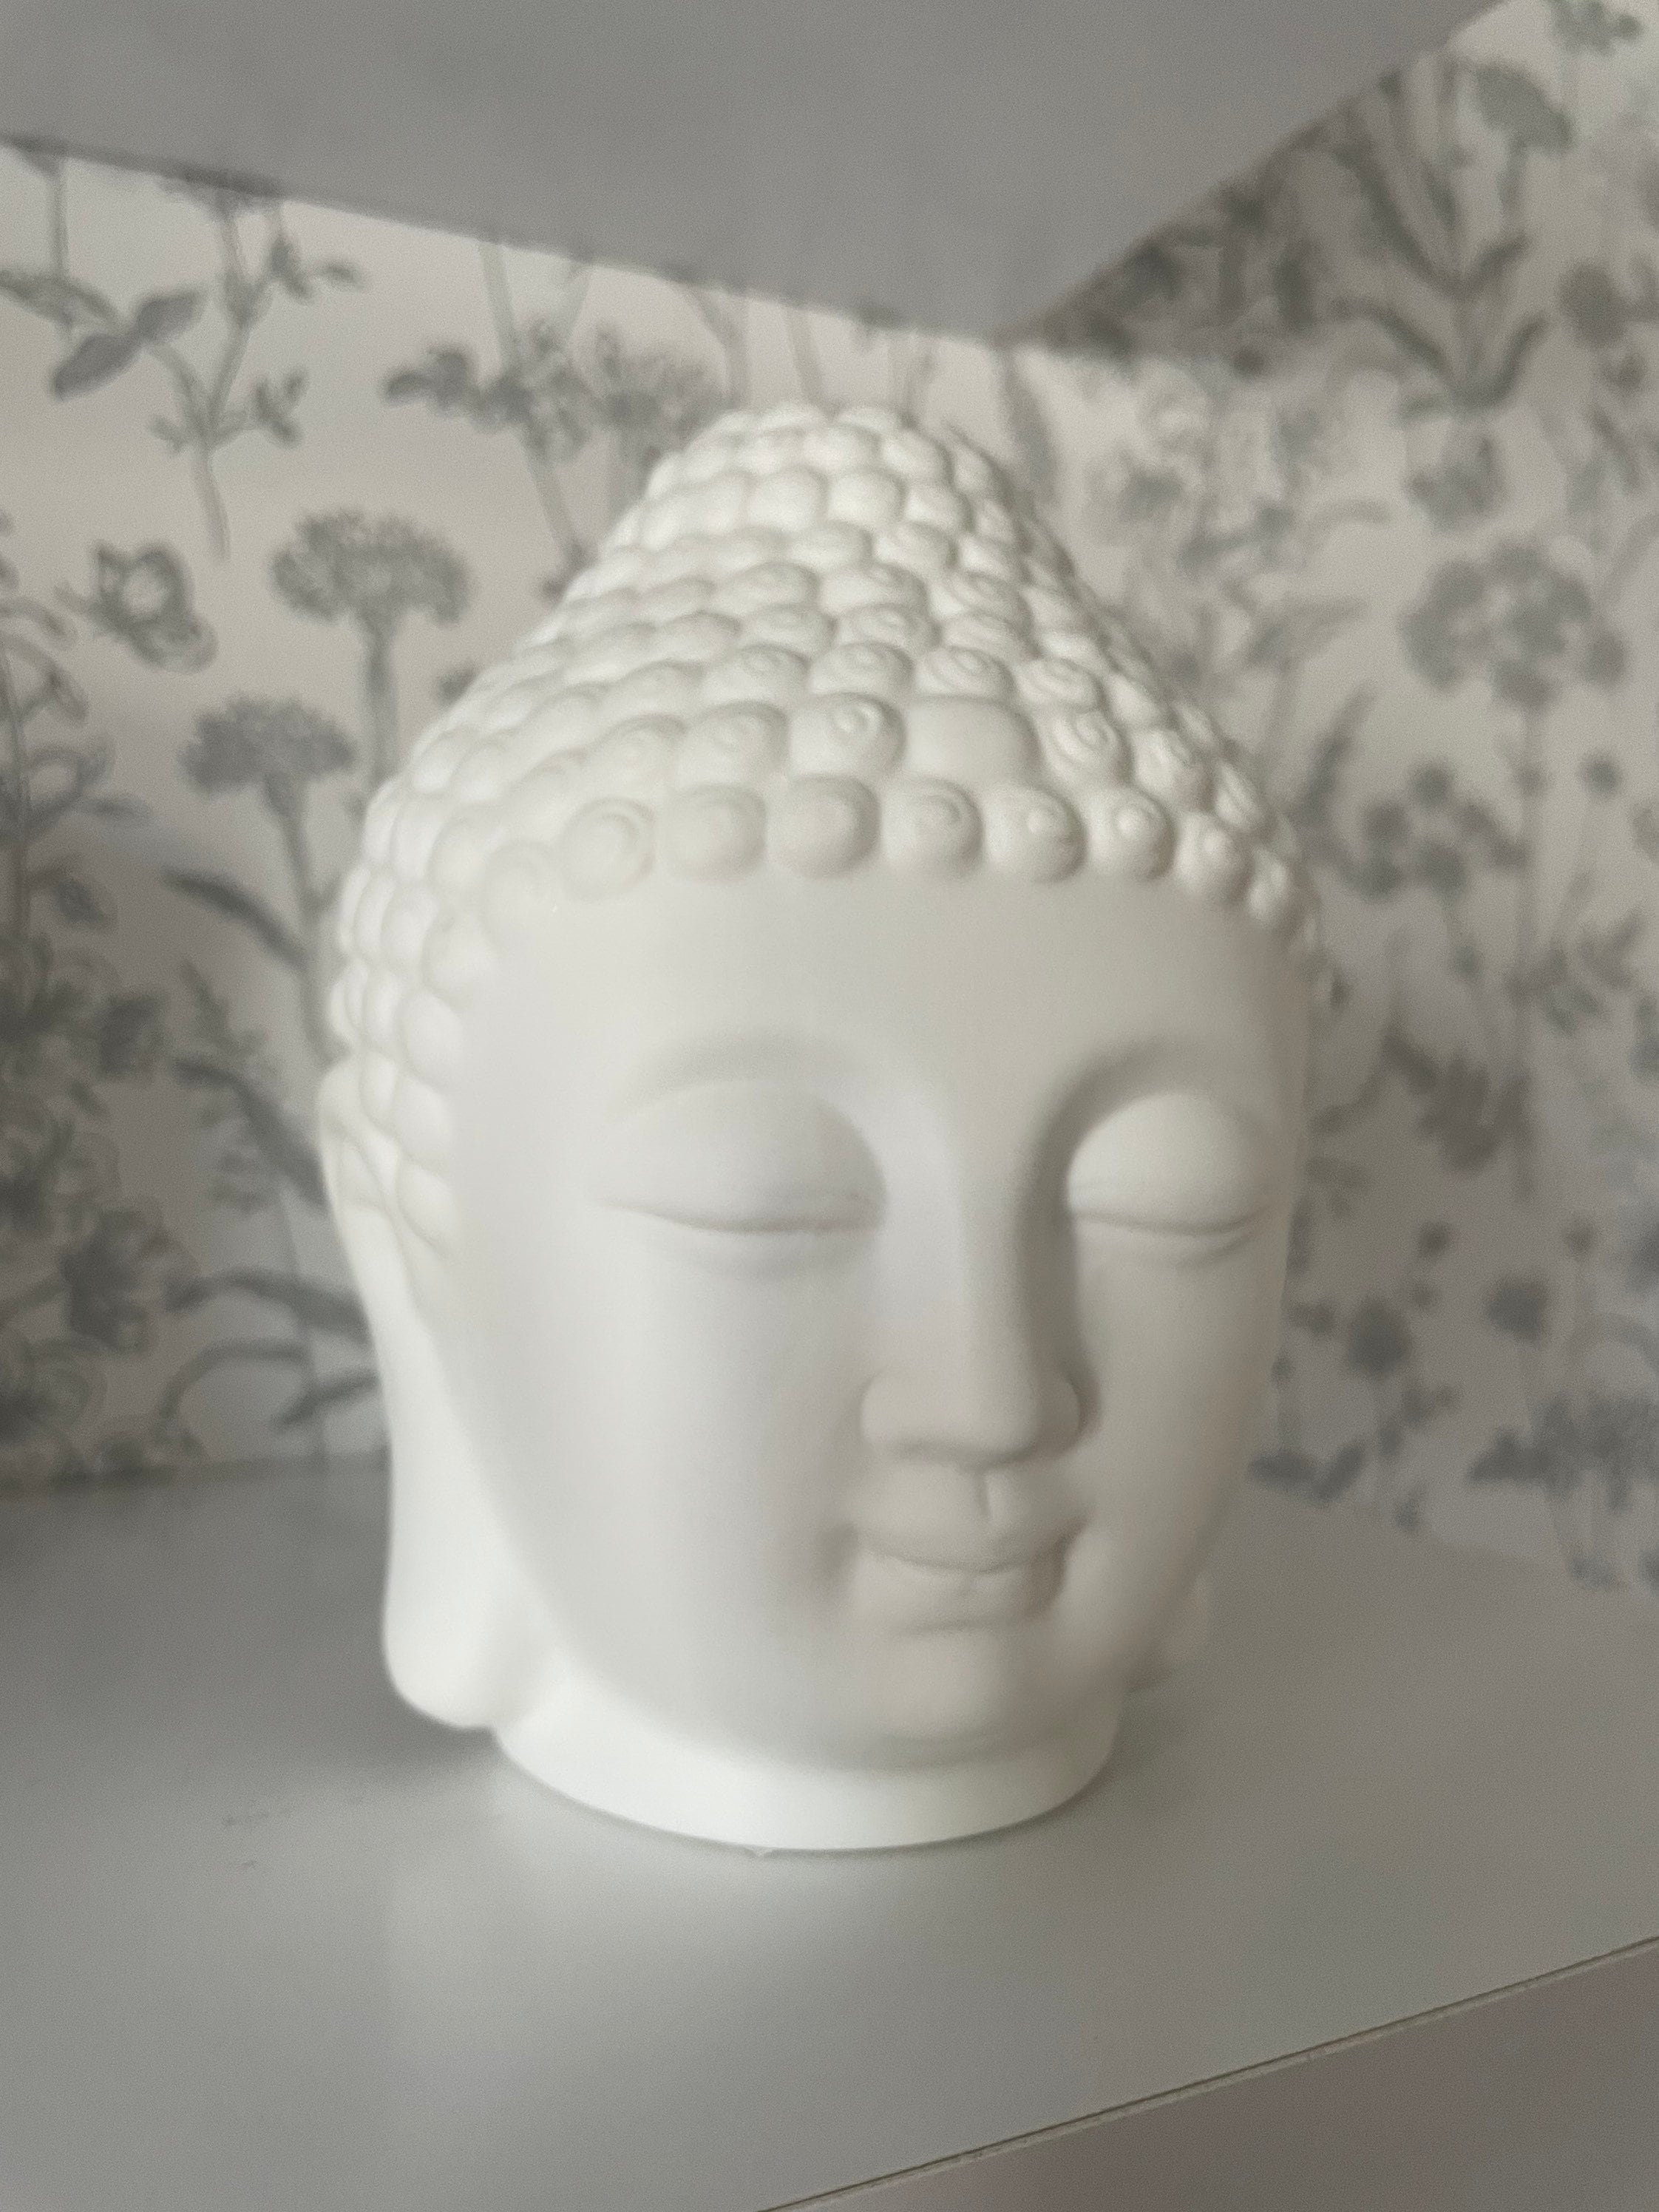 Textil Tisch Lampe Arbeits Zimmer Buddha Kopf Keramik Büro Lese Stoff Leuchte 